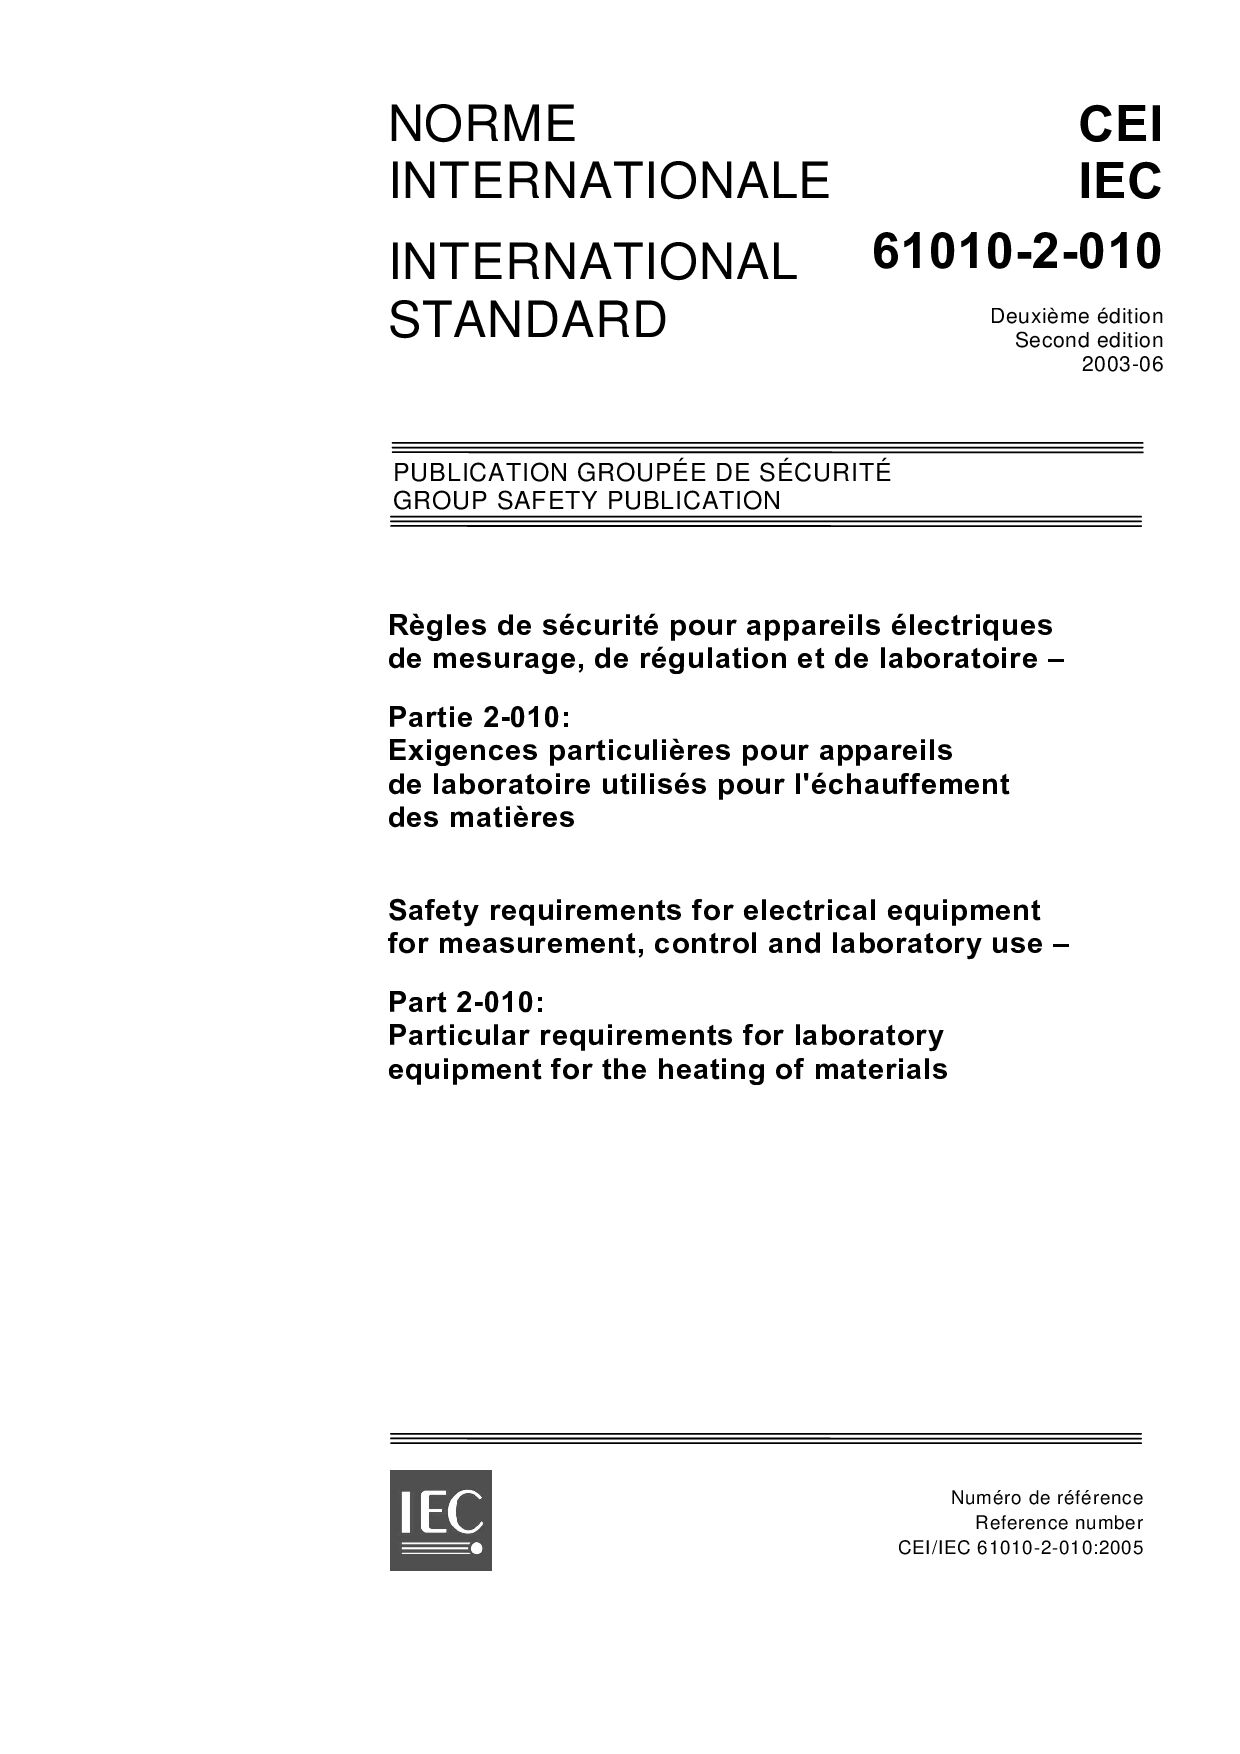 IEC 61010-2-010:2005